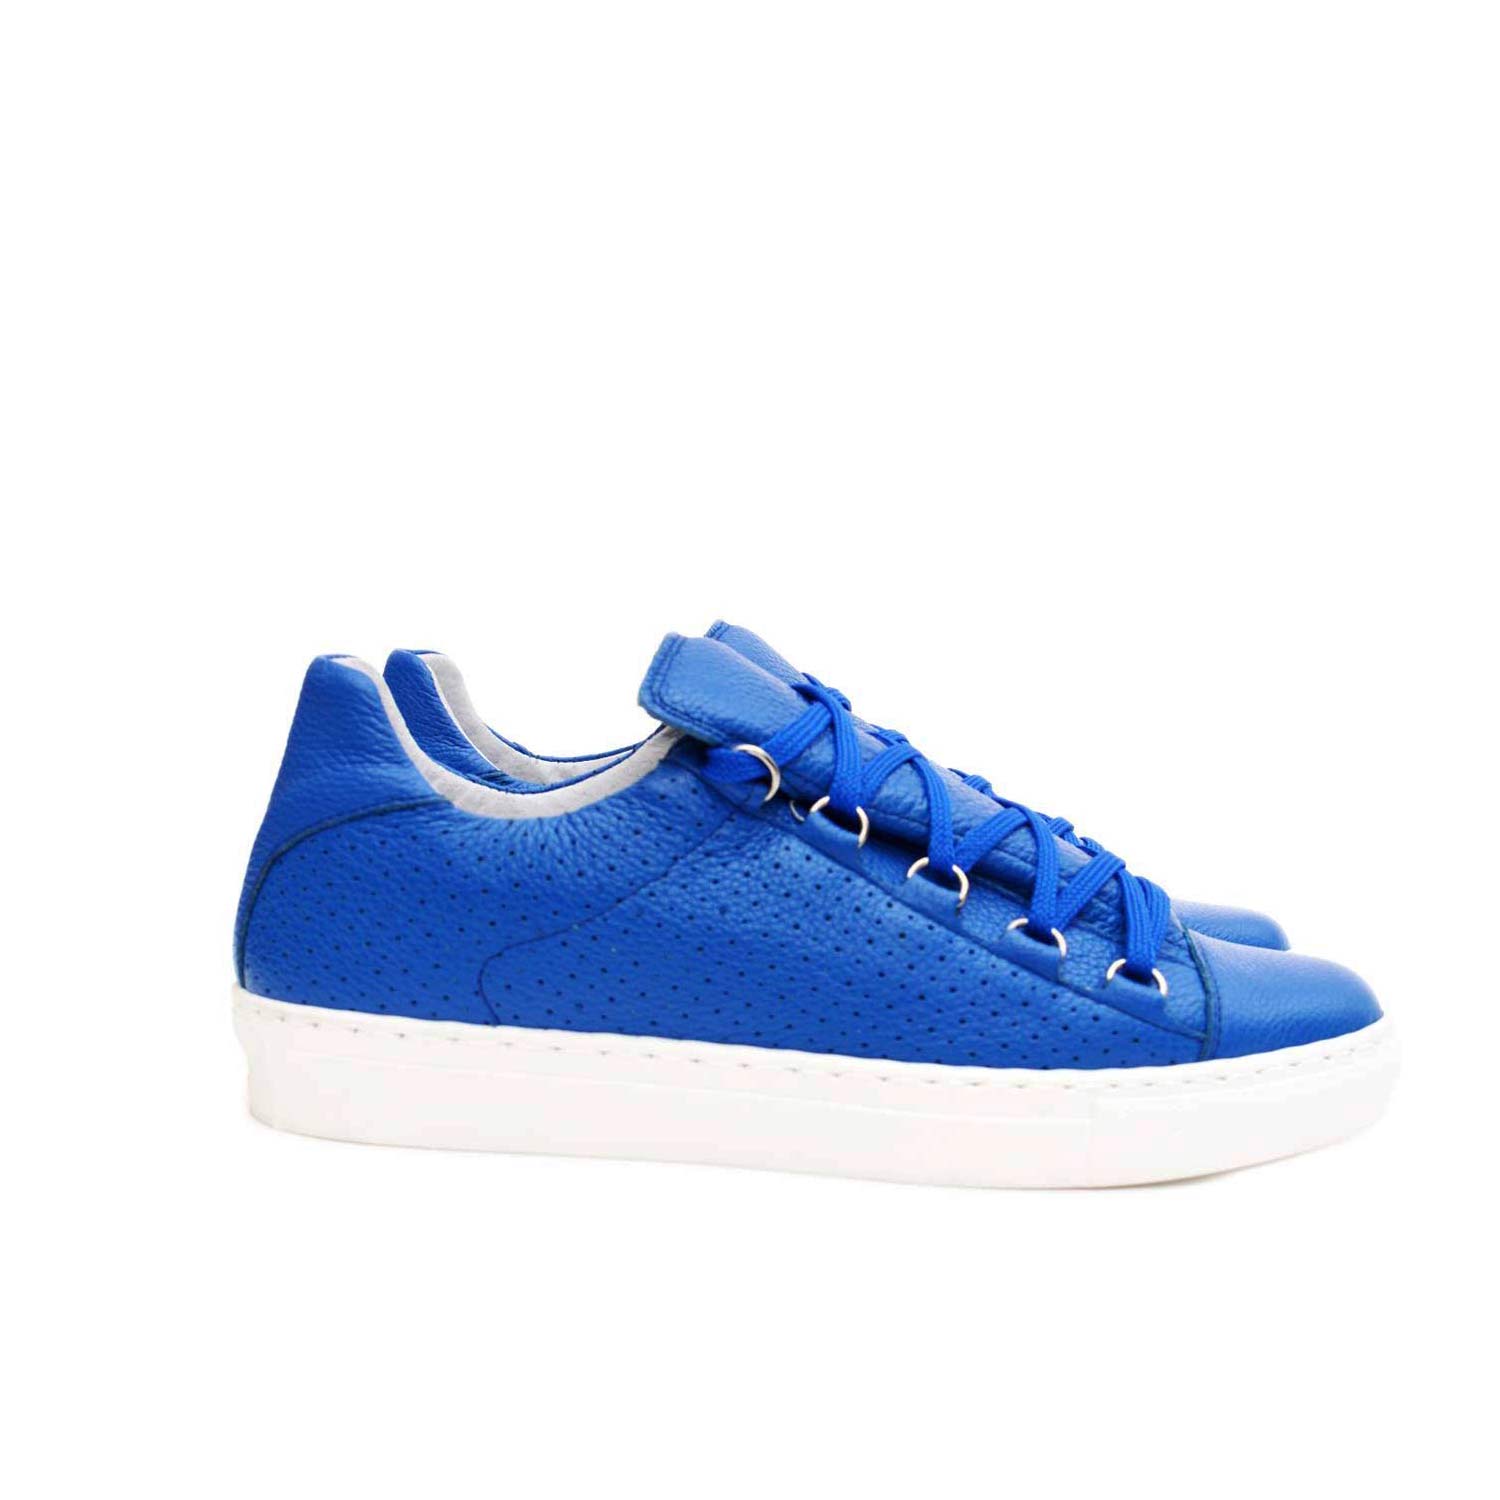 Sneakers bassa bluette  lacci forata blu vera pelle made in italy ultraleggera.